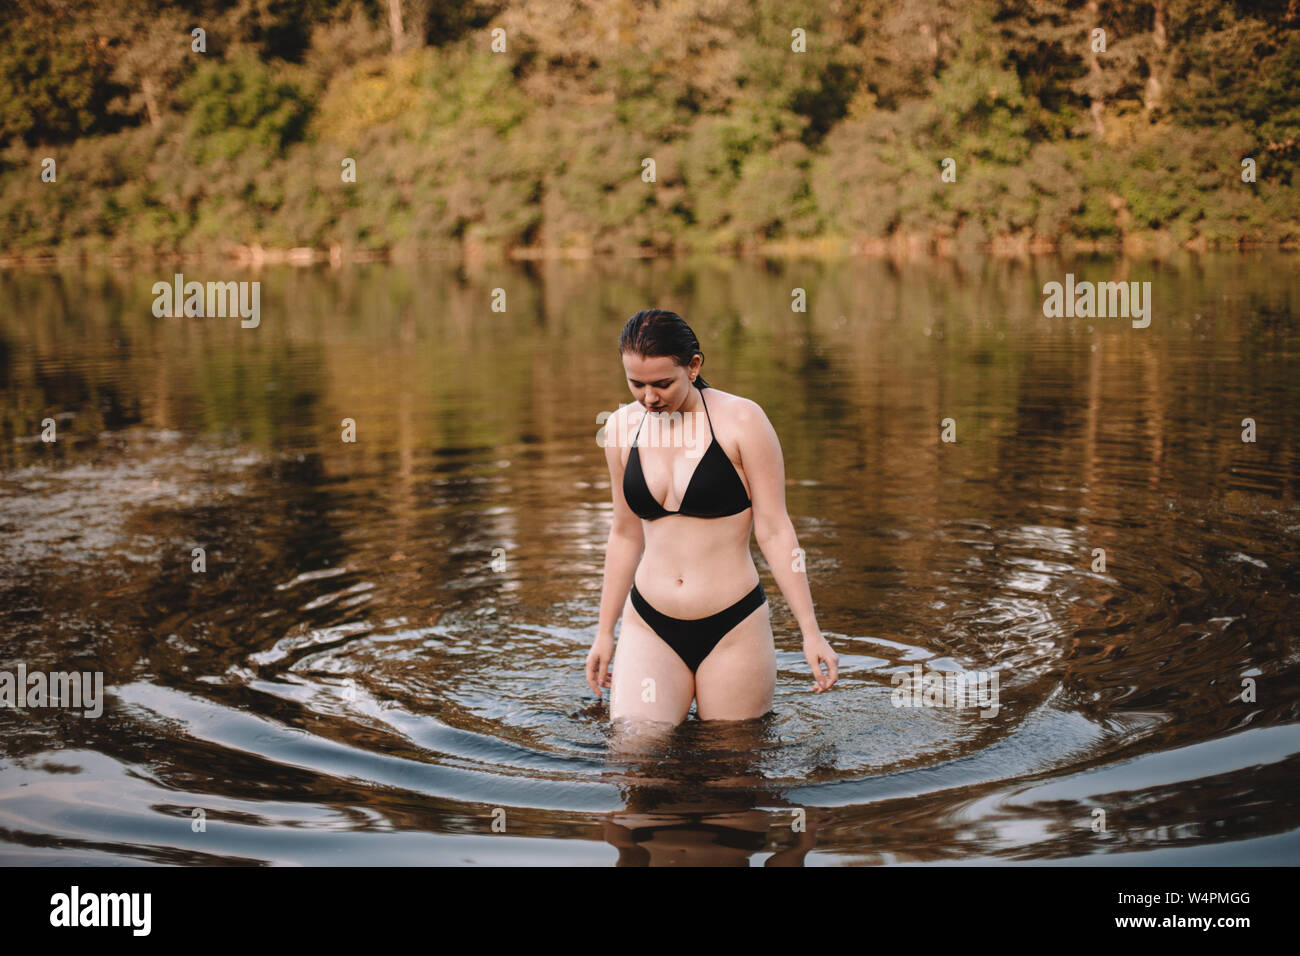 Young woman in a bikini walking in lake Stock Photo